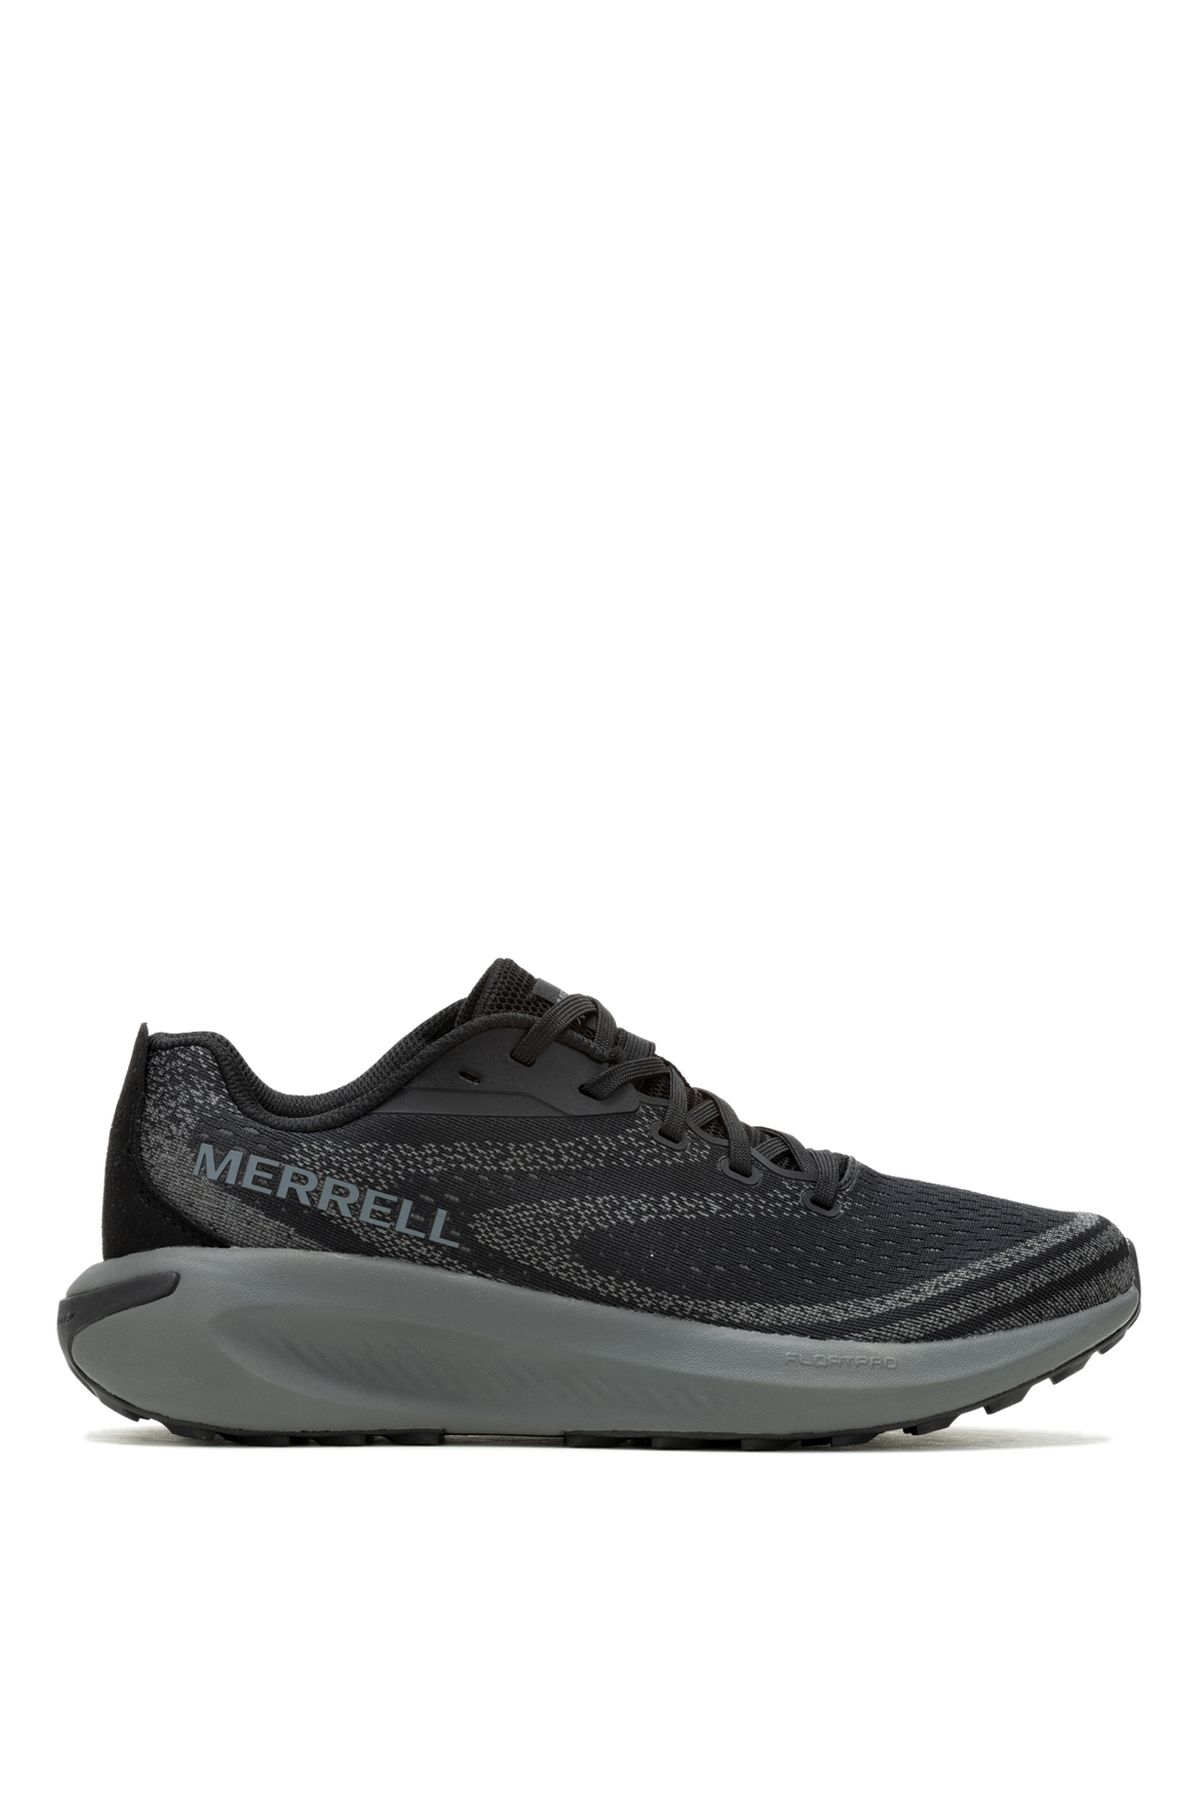 Merrell Siyah Erkek Koşu Ayakkabısı J068063_MORPHLITE